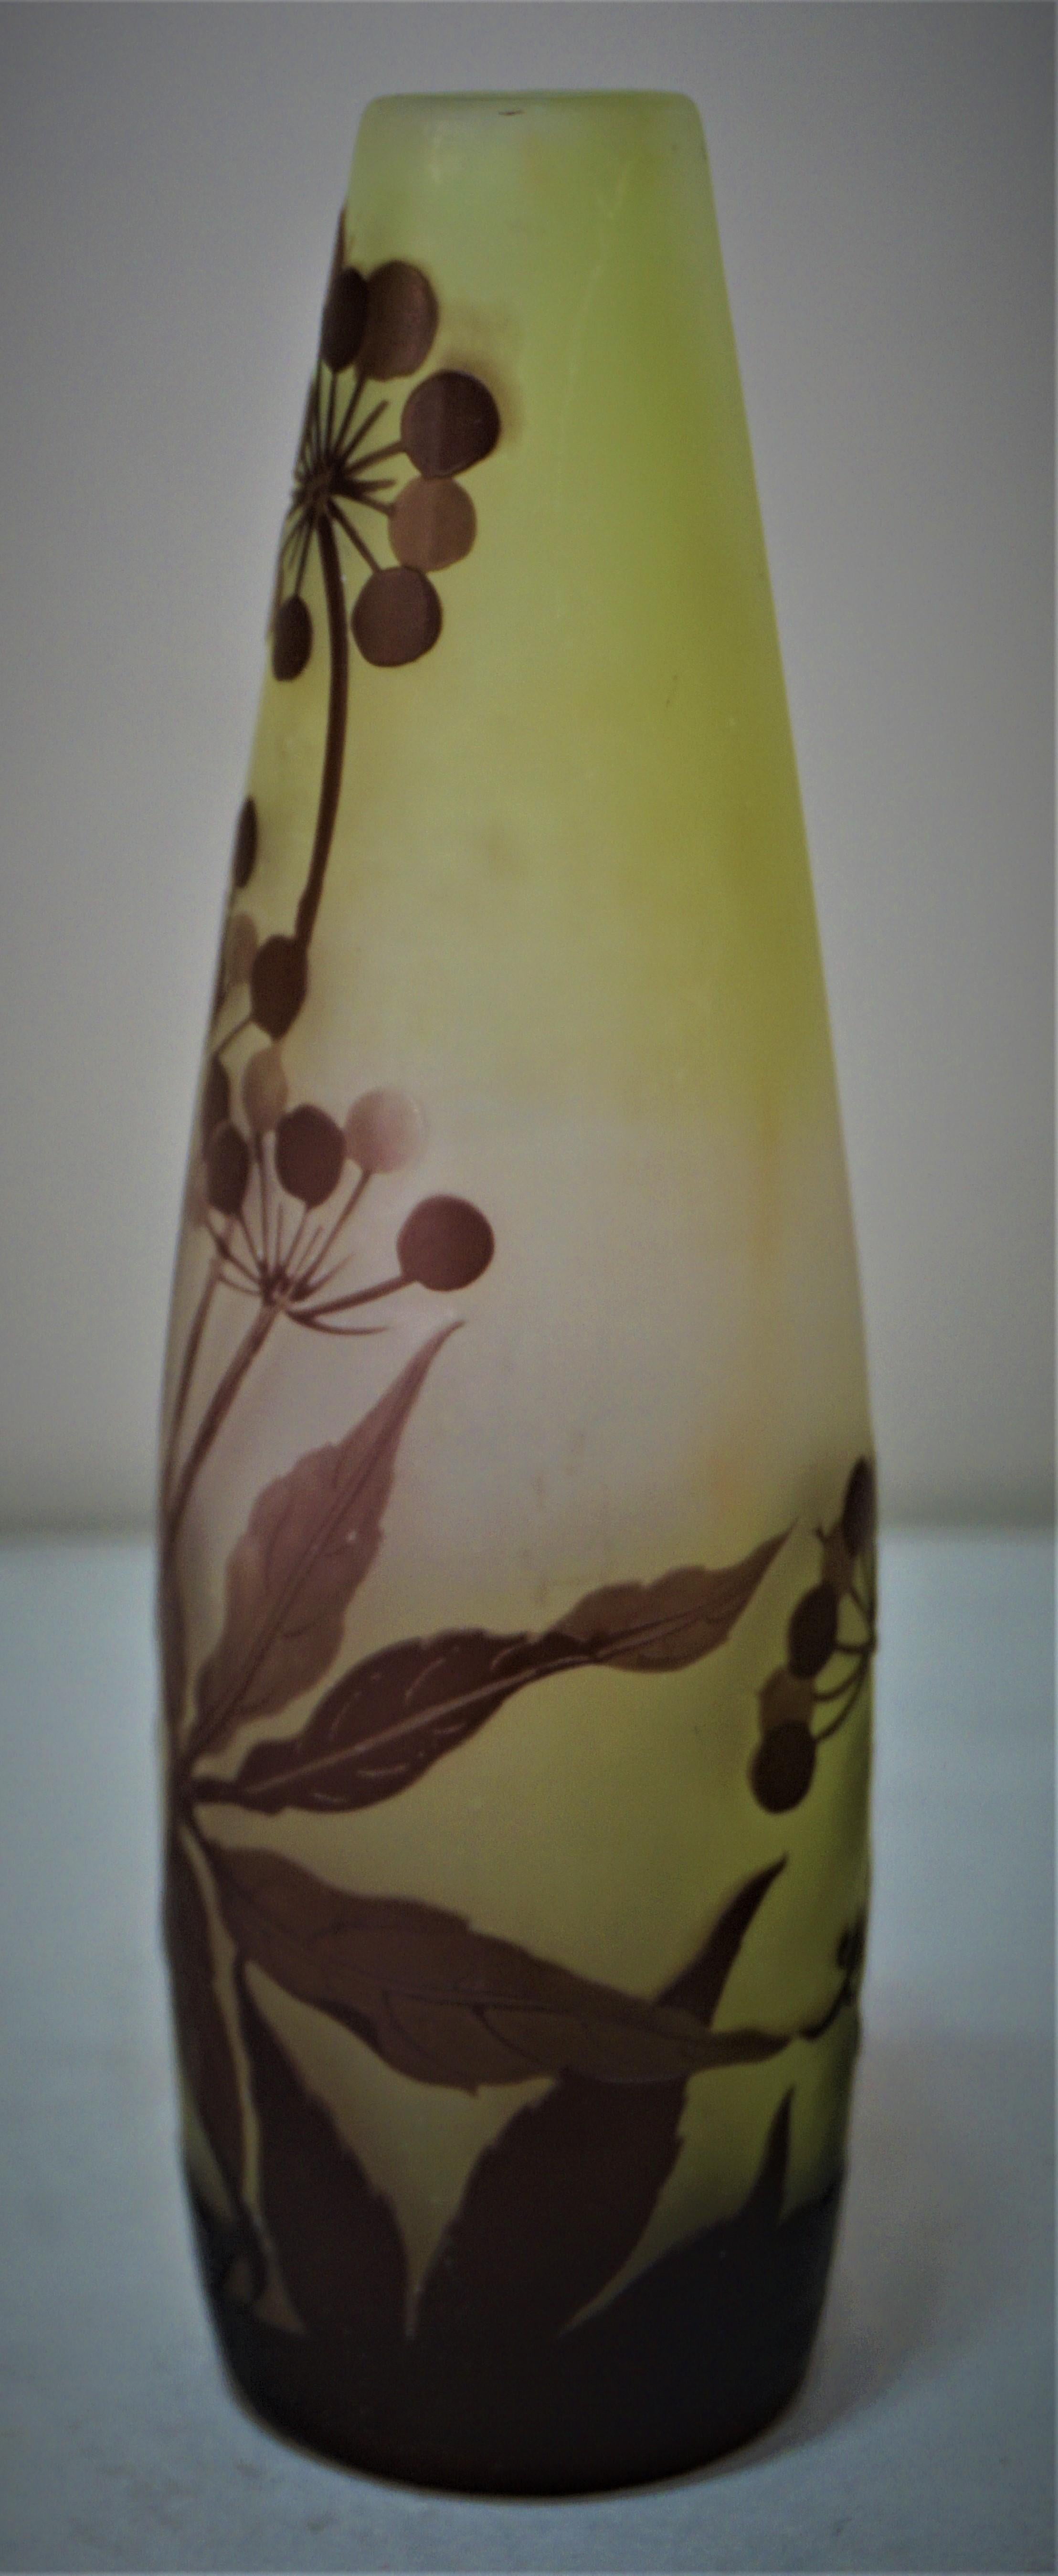 Early 20th century flora design Art Nouveau vase by Emile Galle.